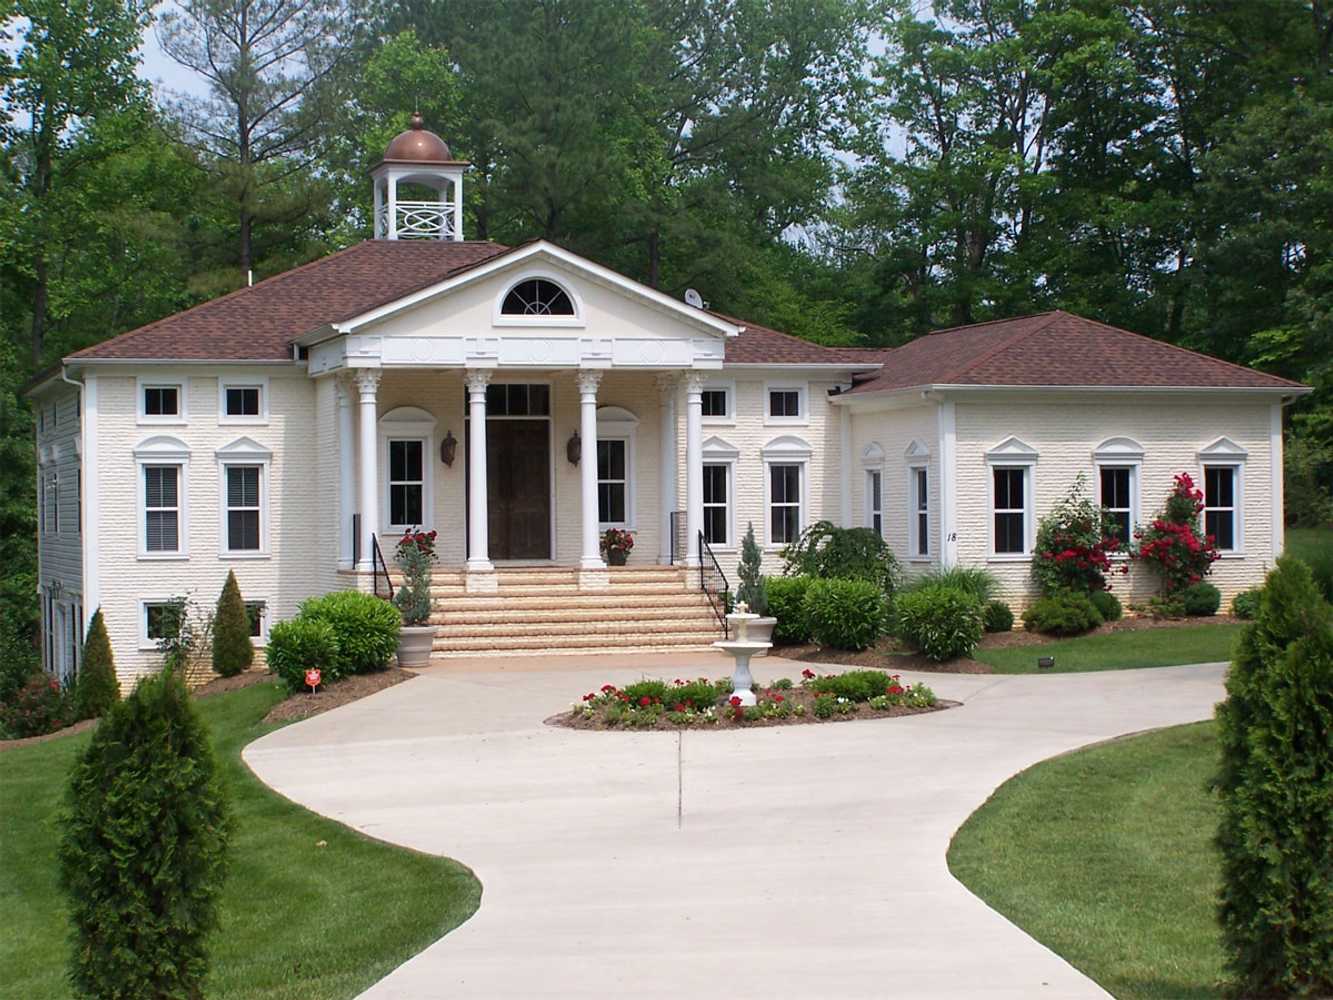 New Virginia Villa based on Villa Rotunda